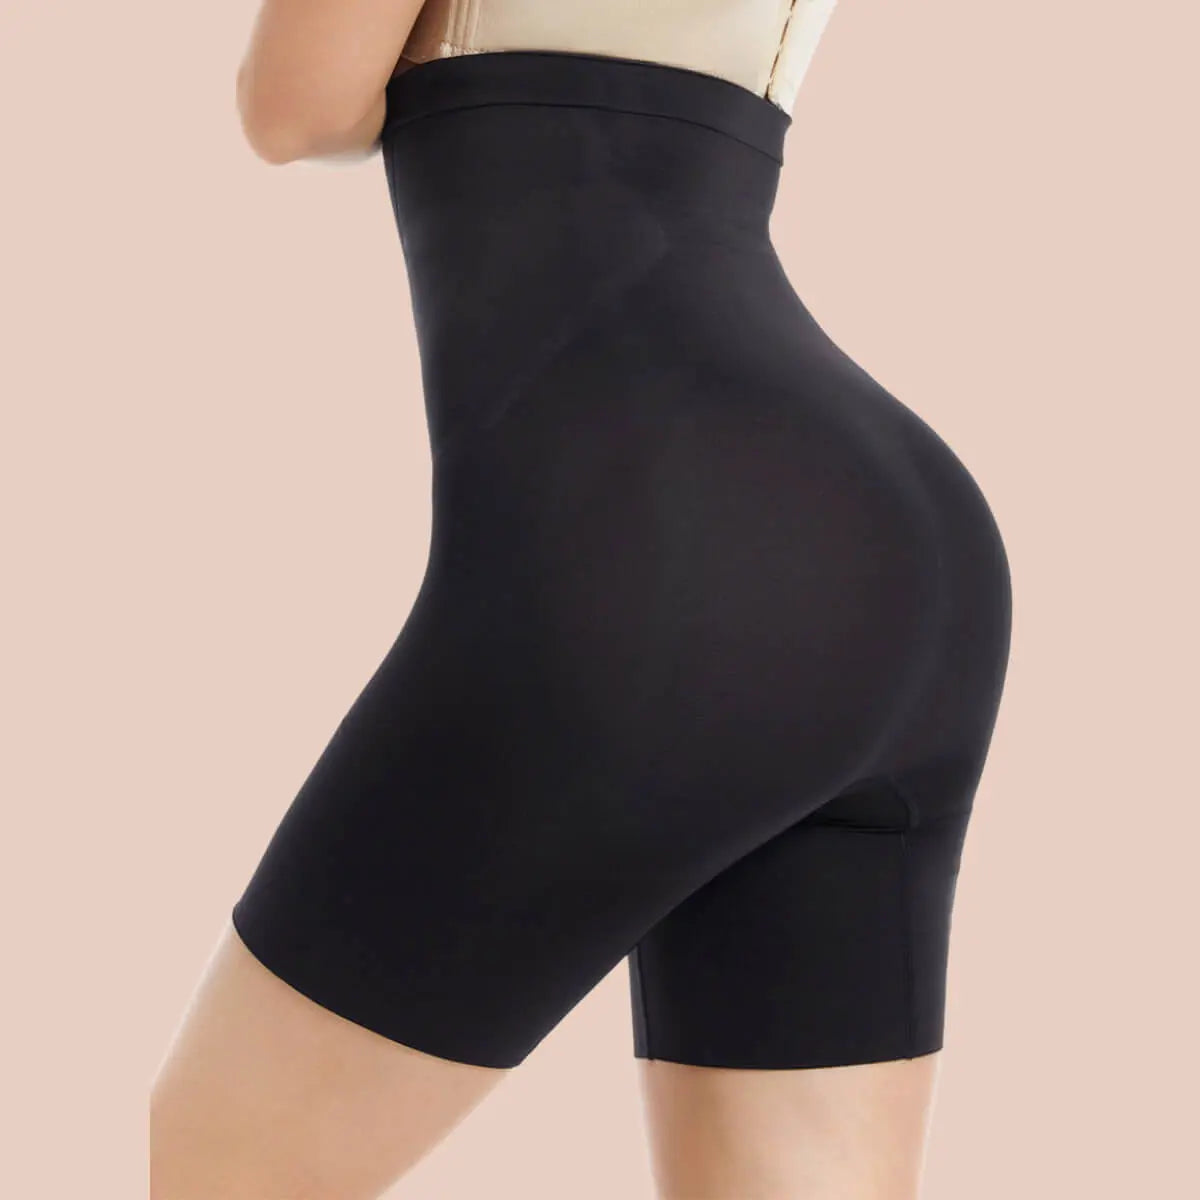 Cheap Women Ass Padded Shapewear Shorts Hip Enhancer Body Shaper